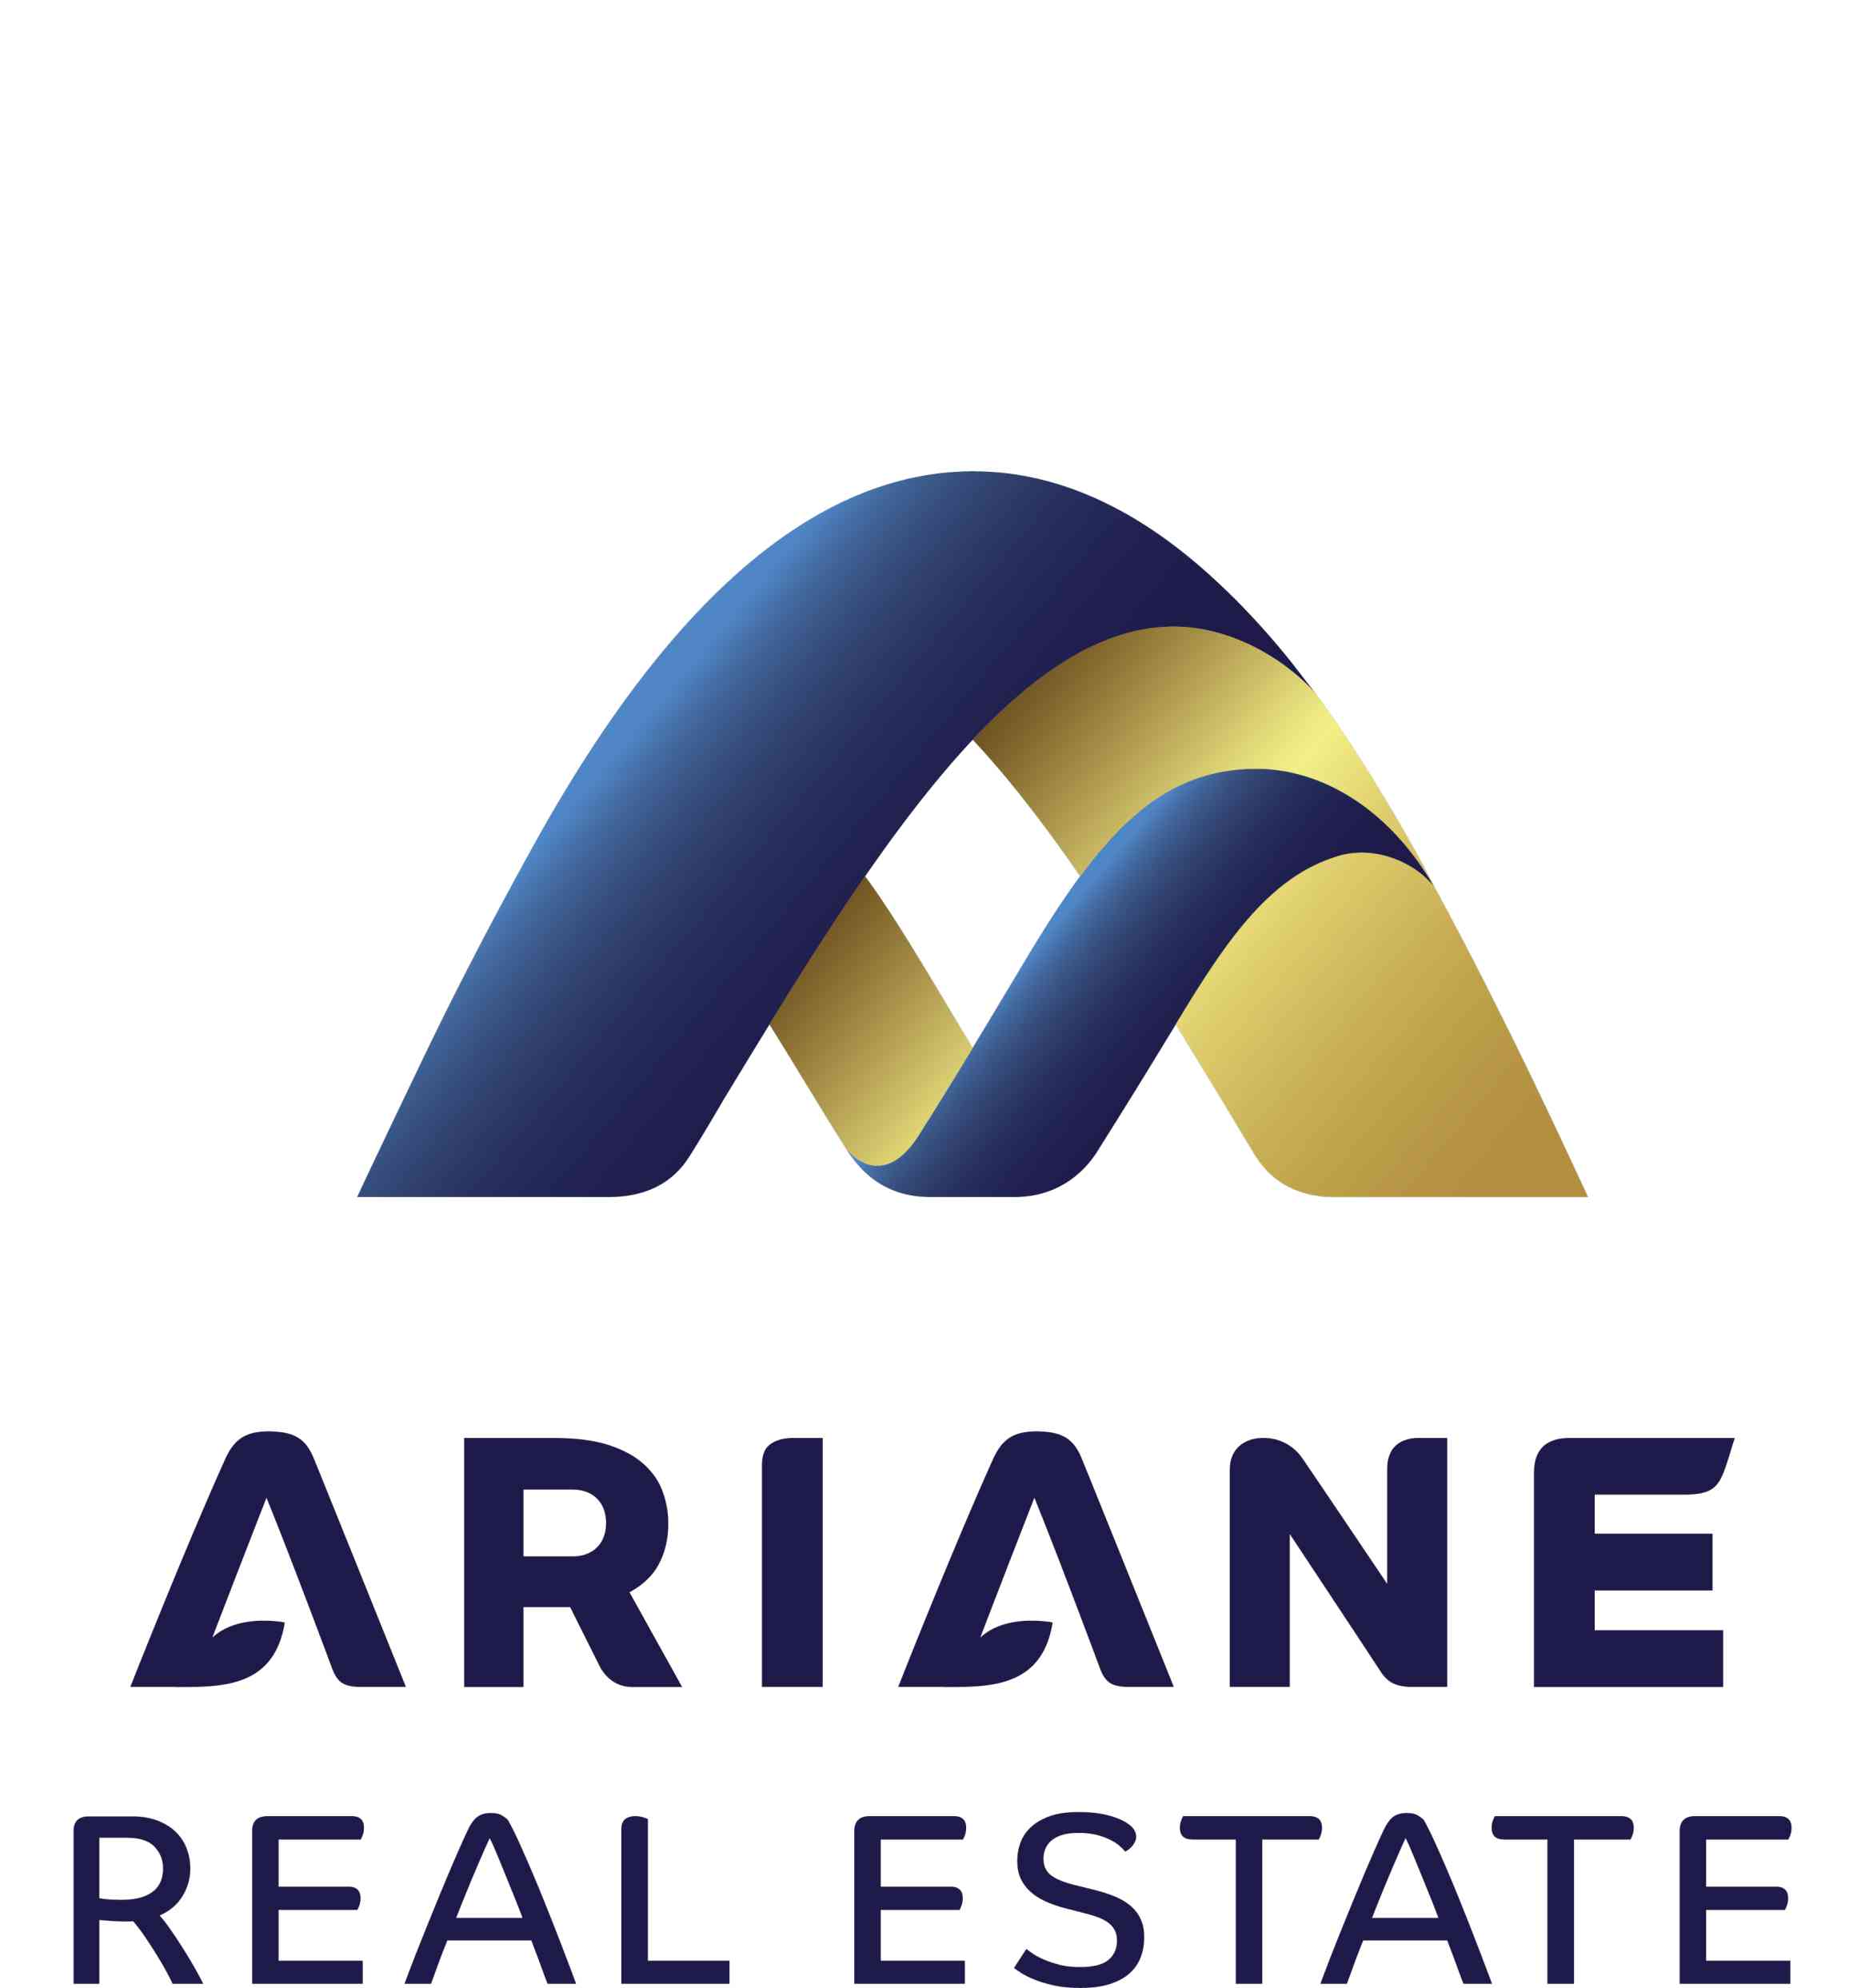 ariane real estate logo